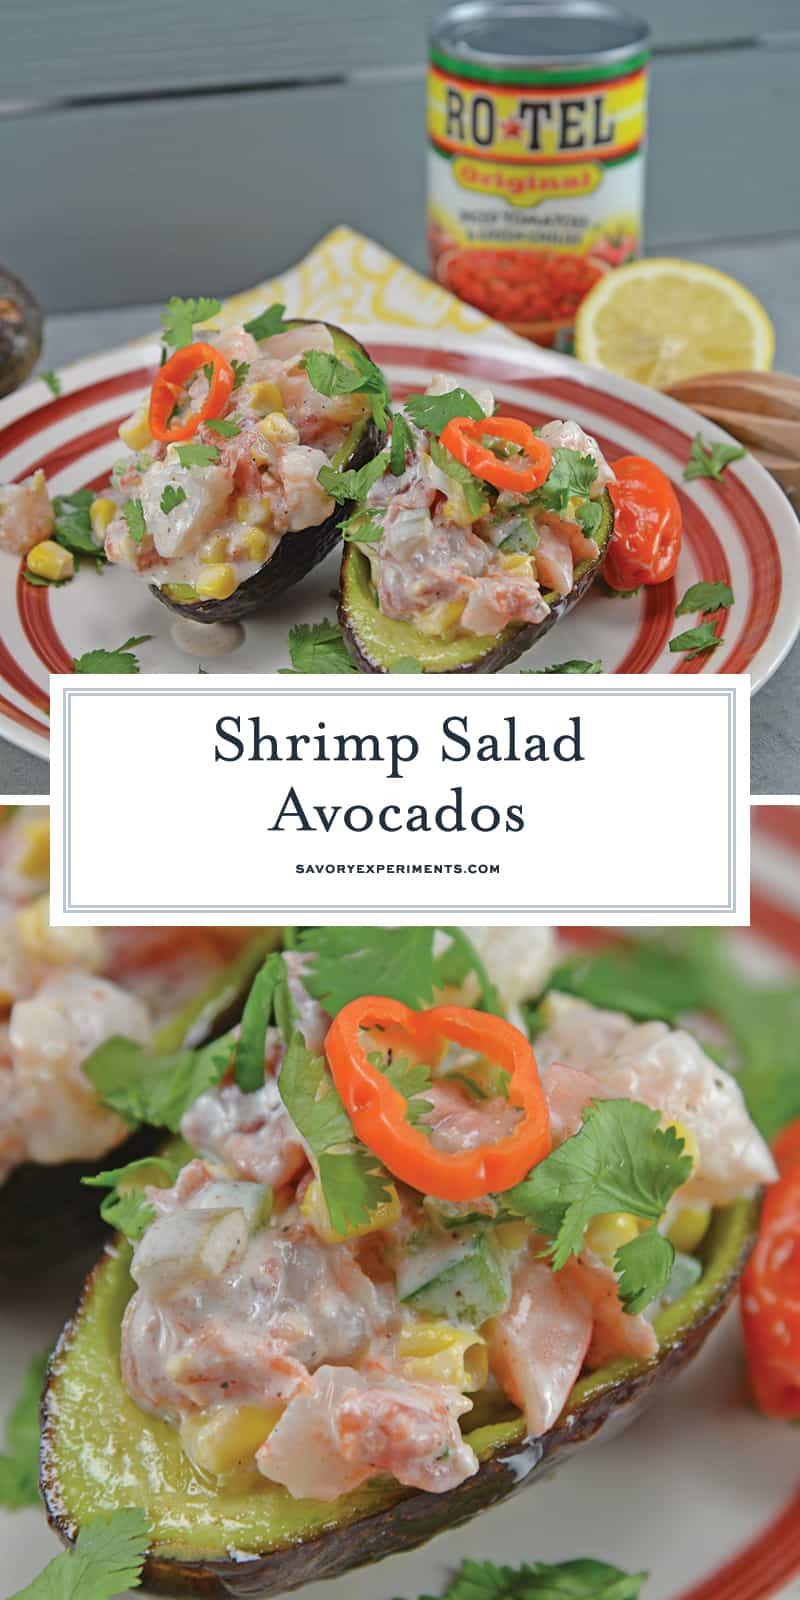 Recipes Using Salad Shrimp
 Shrimp Salad Avocados